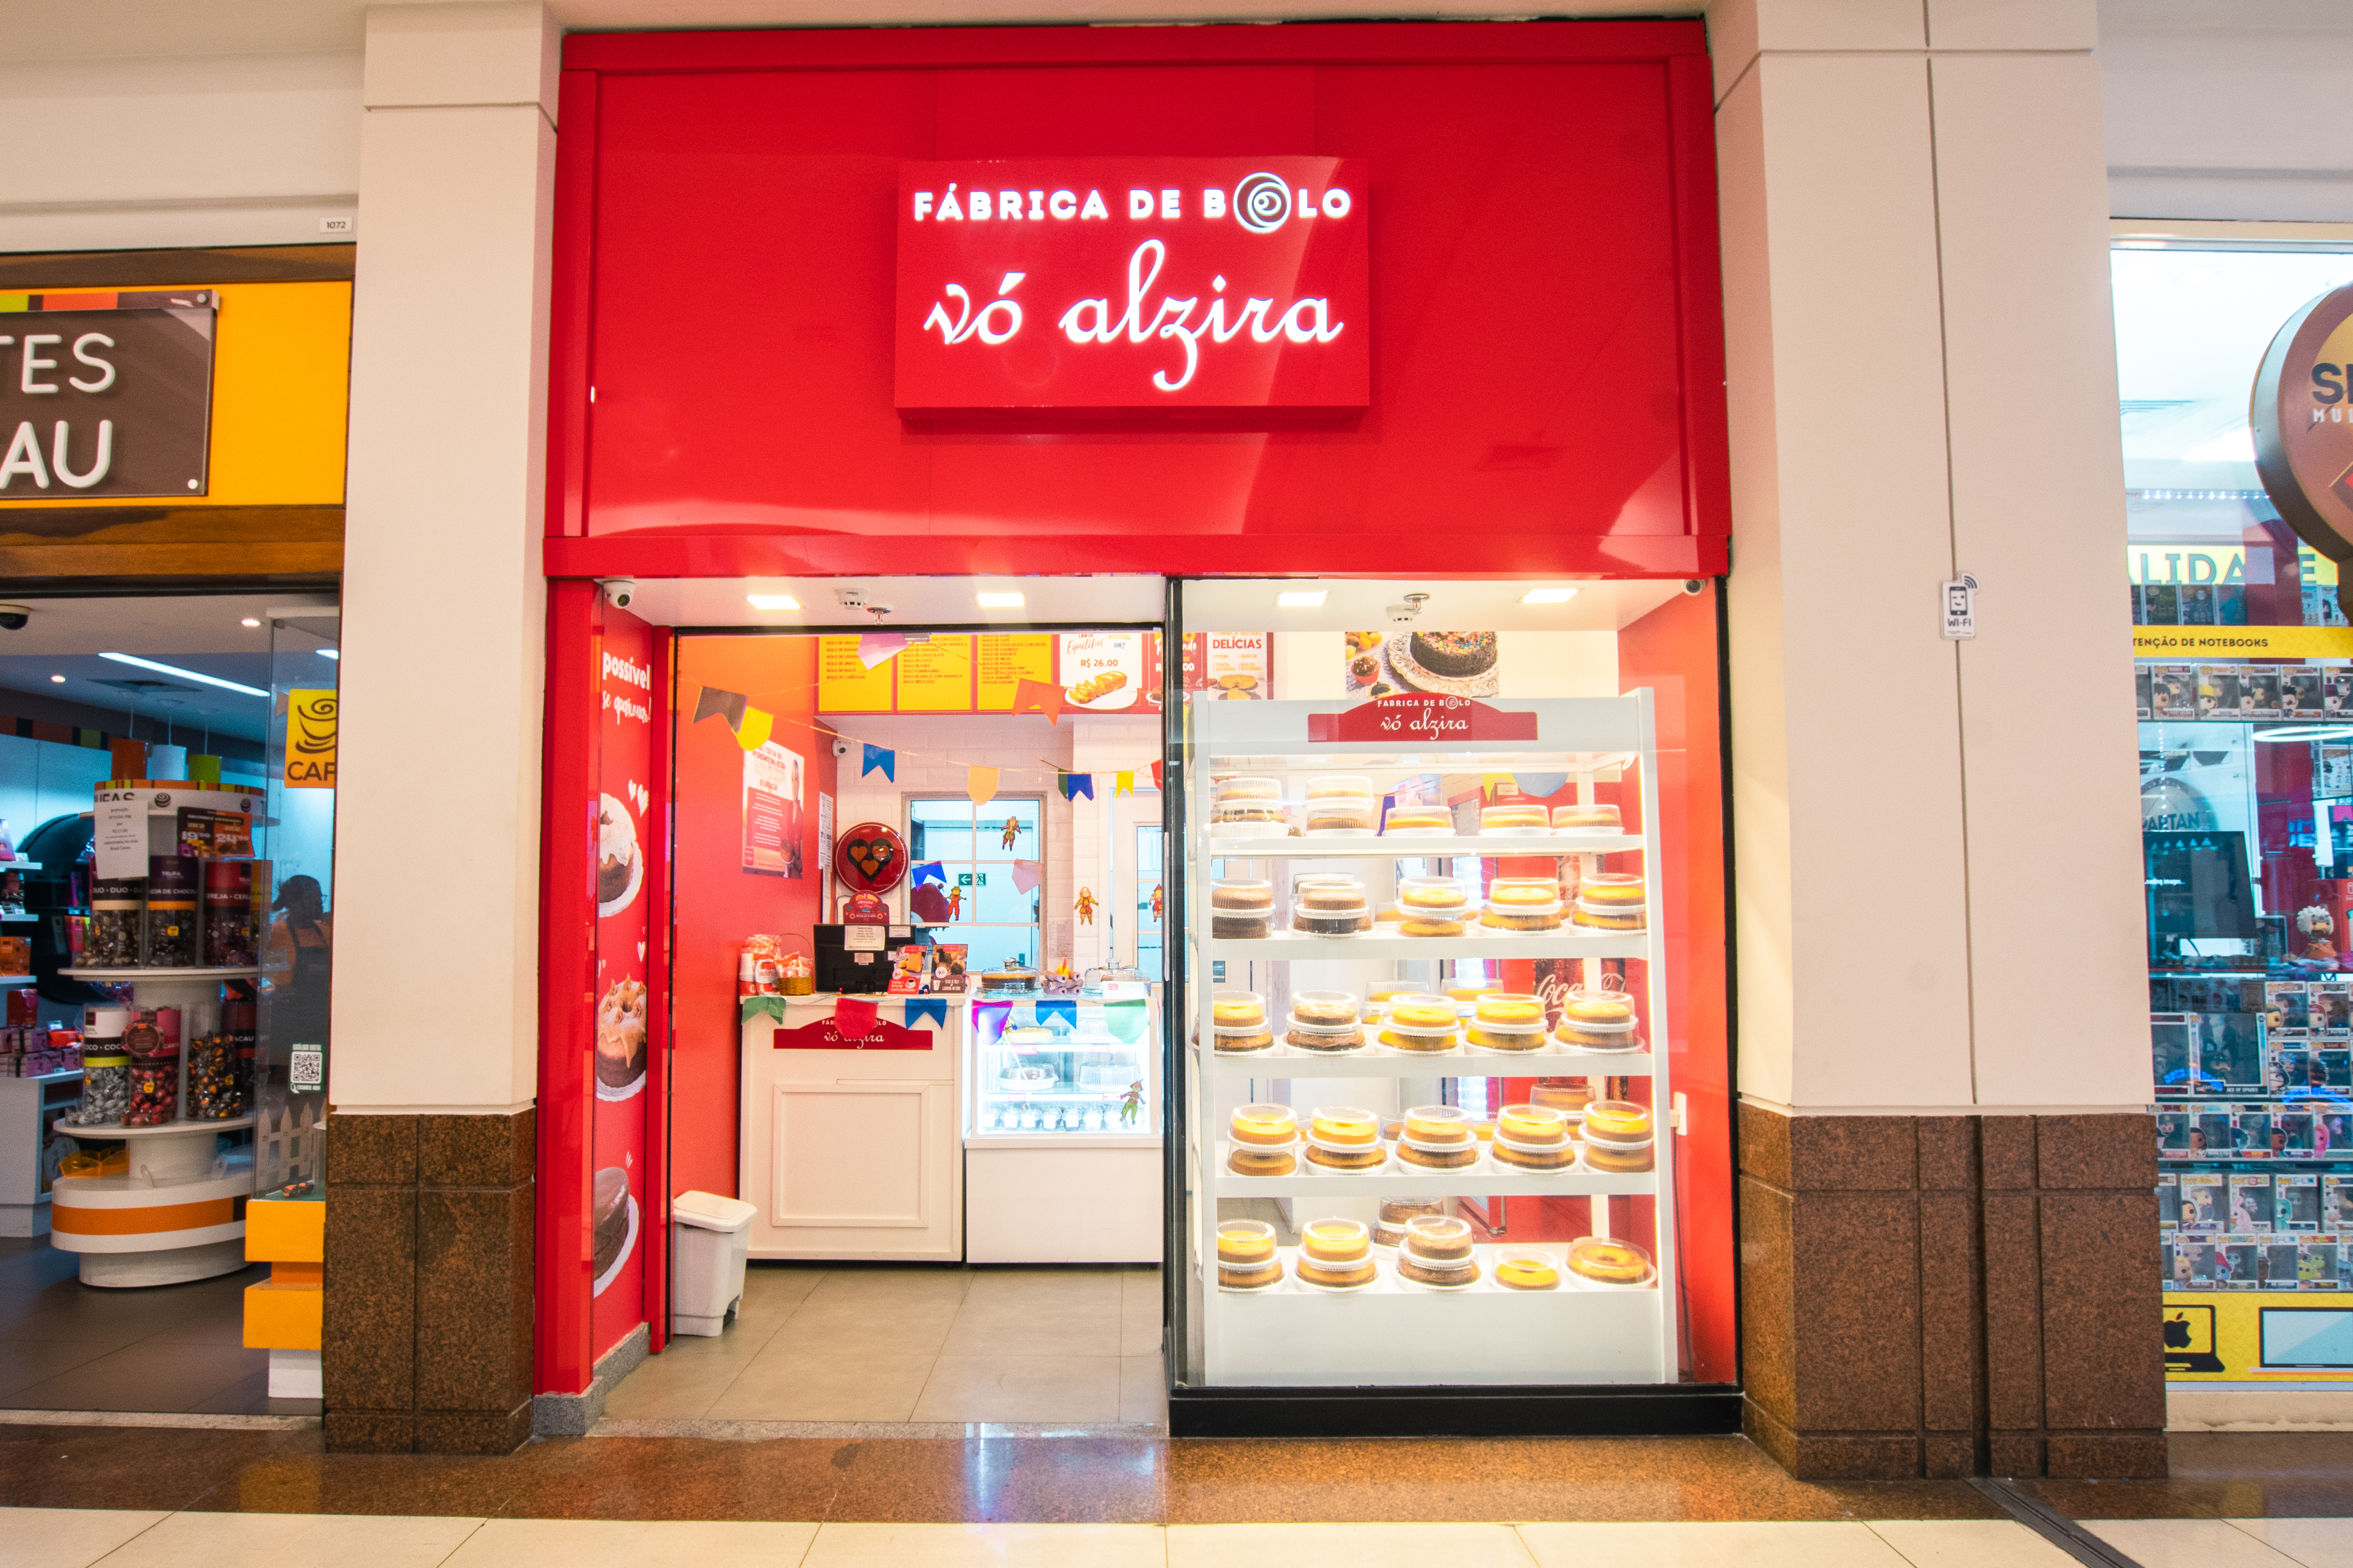 Vó Alzira diversifica e abre cafeteria - Vó Alzira